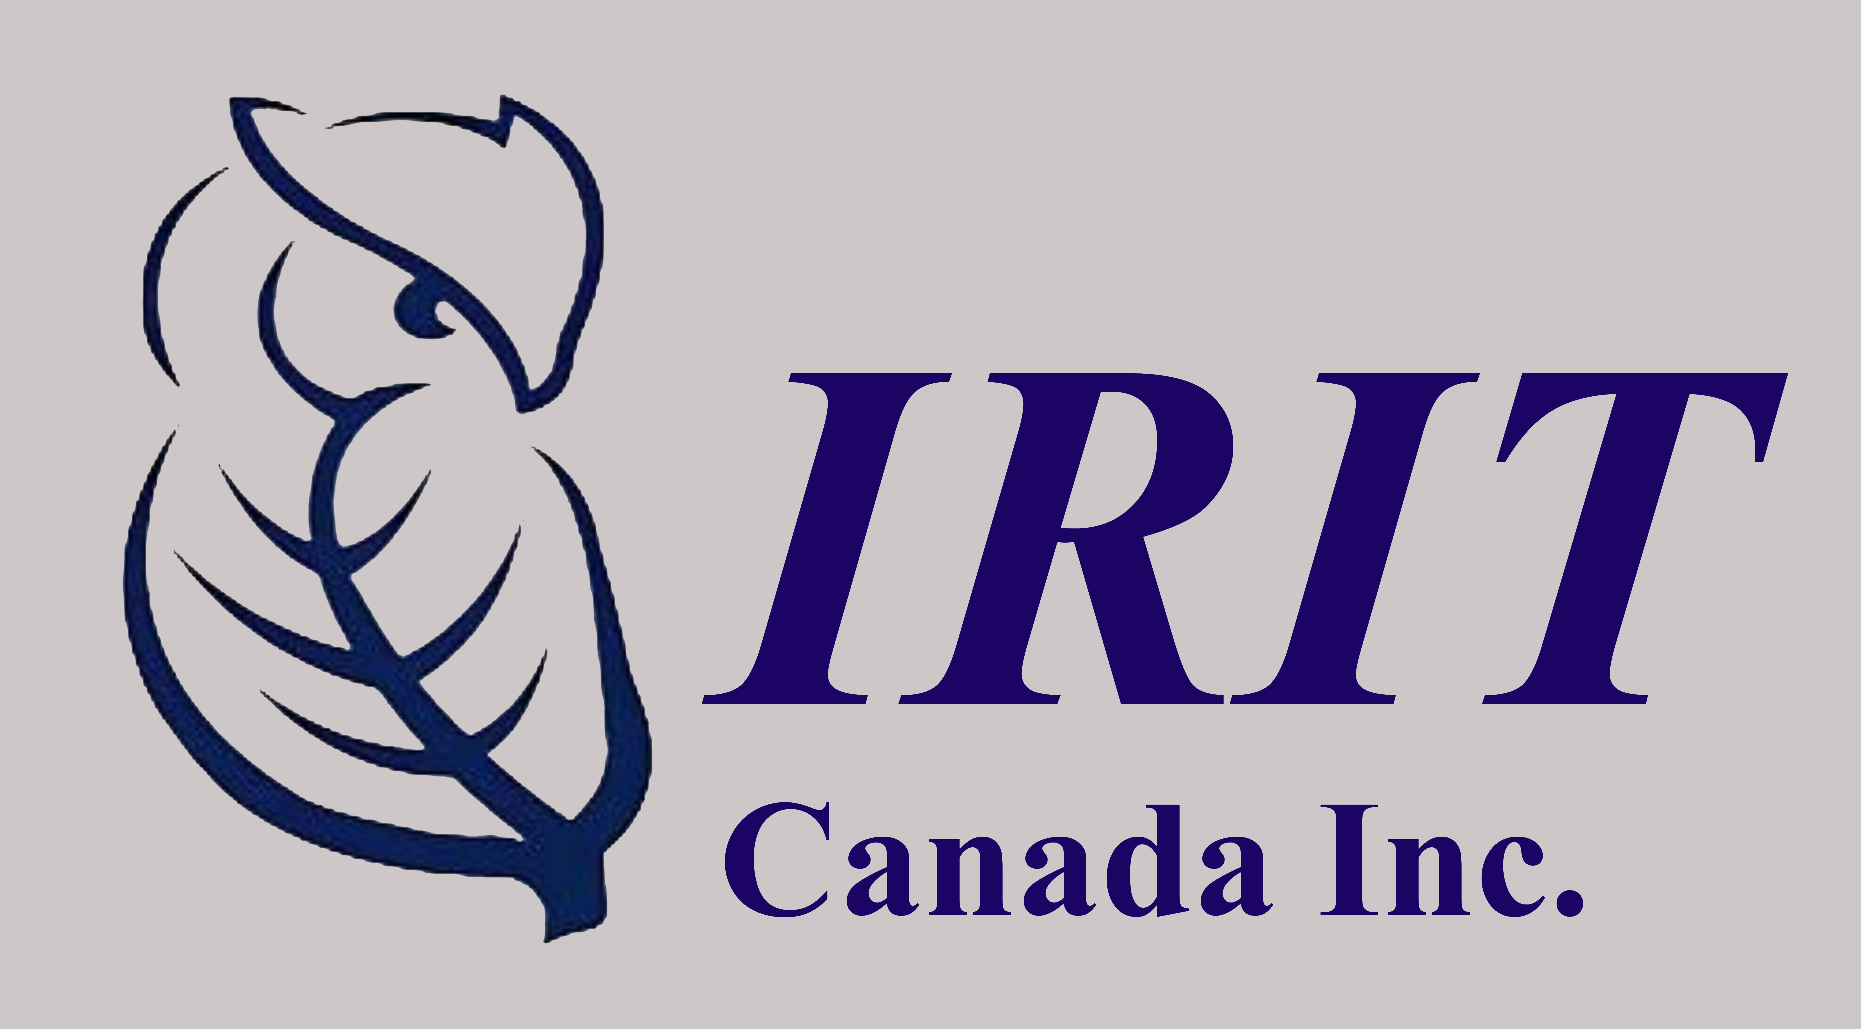 IRIT Canada Inc.